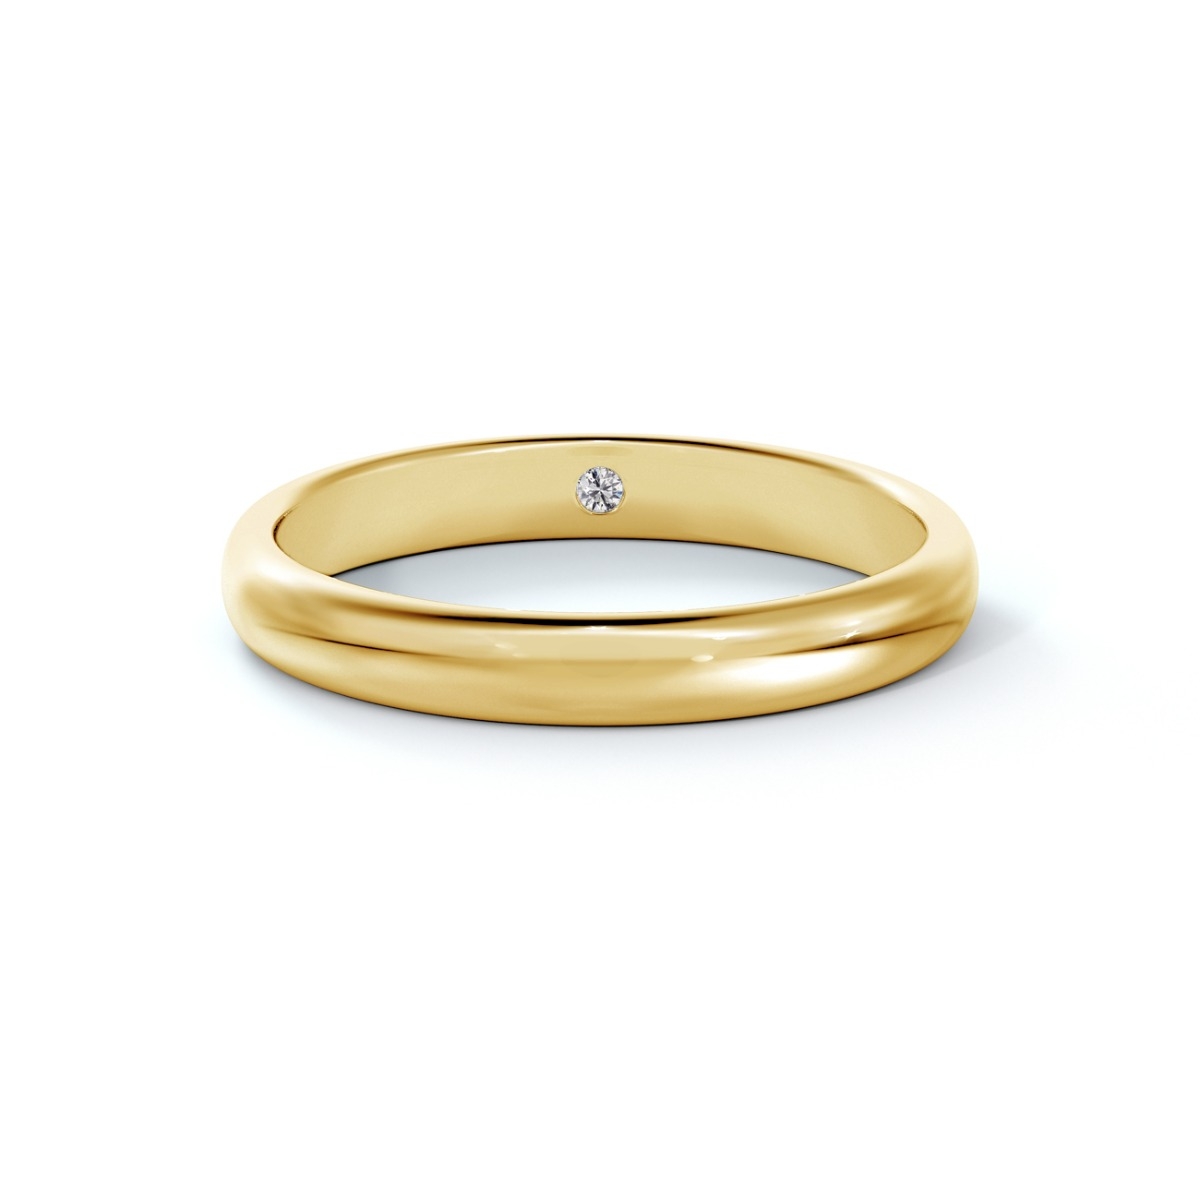 18k yellow gold Forevermark ring